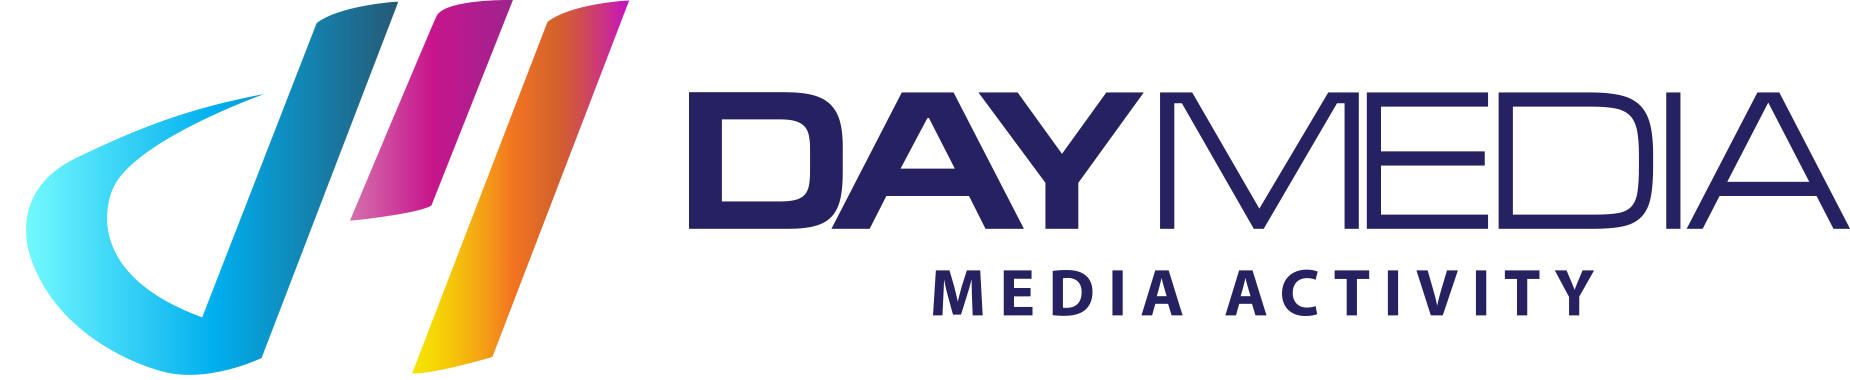 Day Media Company